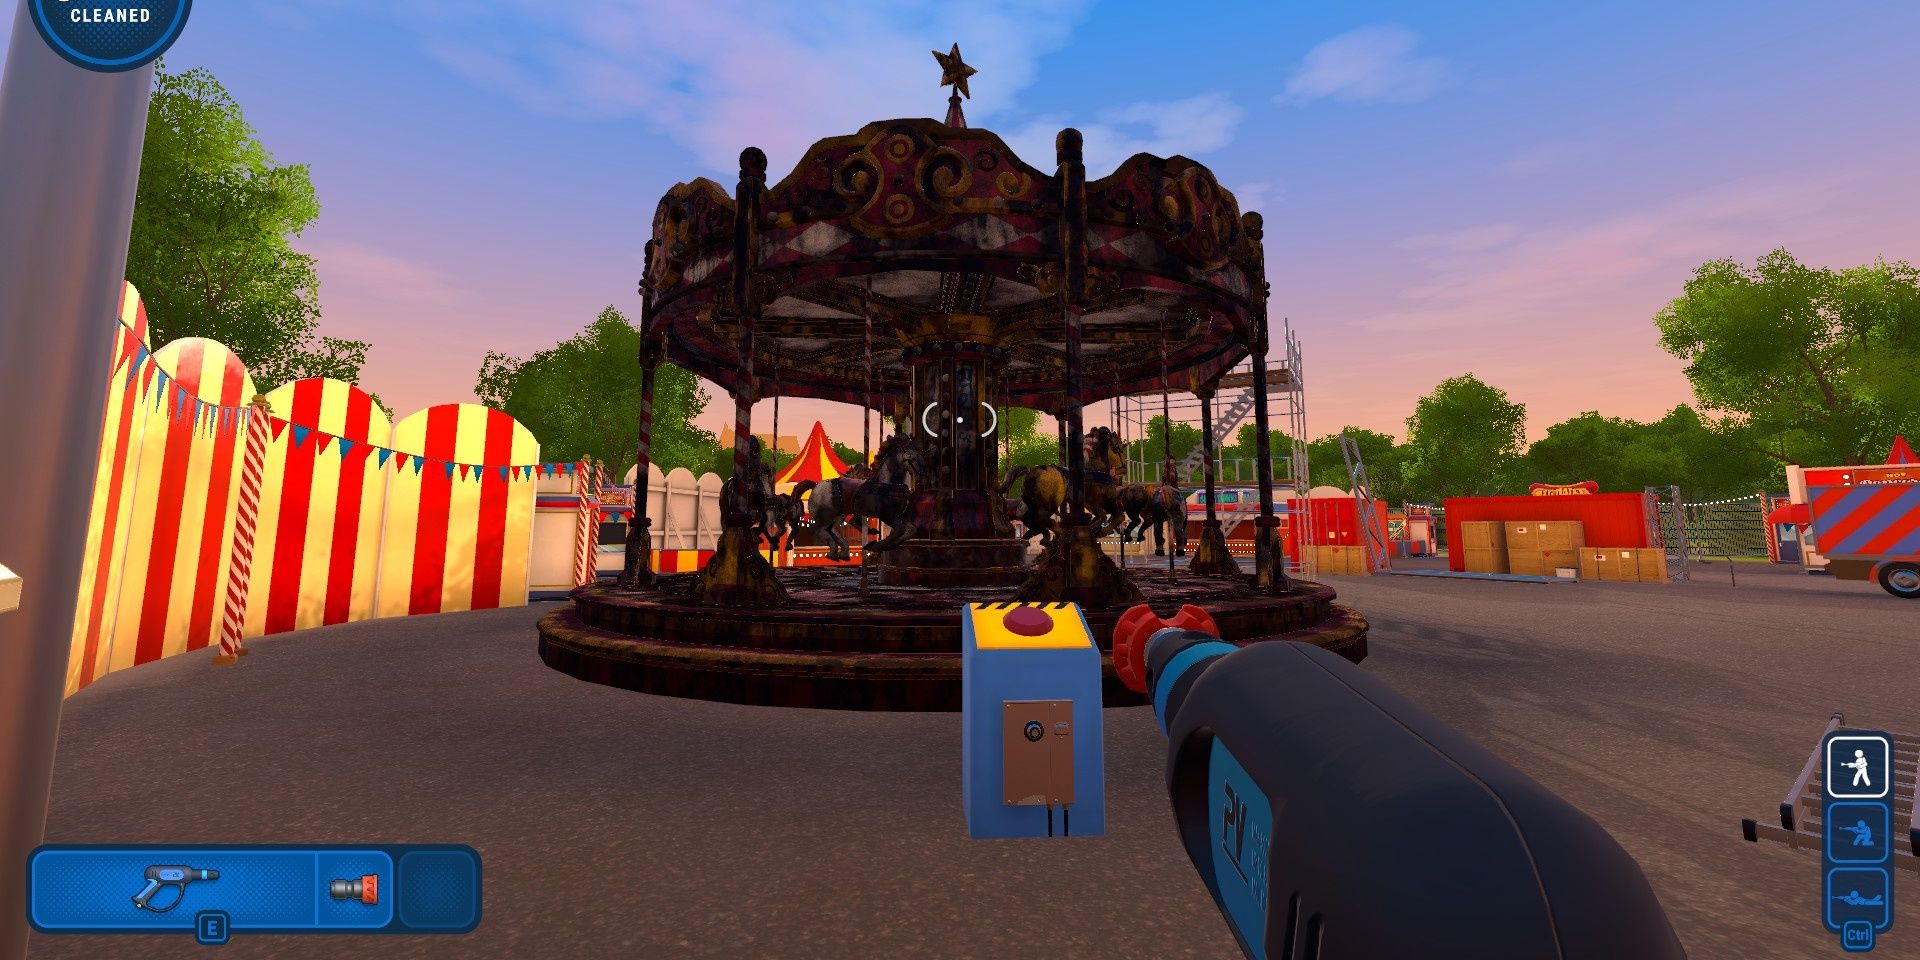 The dirty carousel in PowerWash Simulator